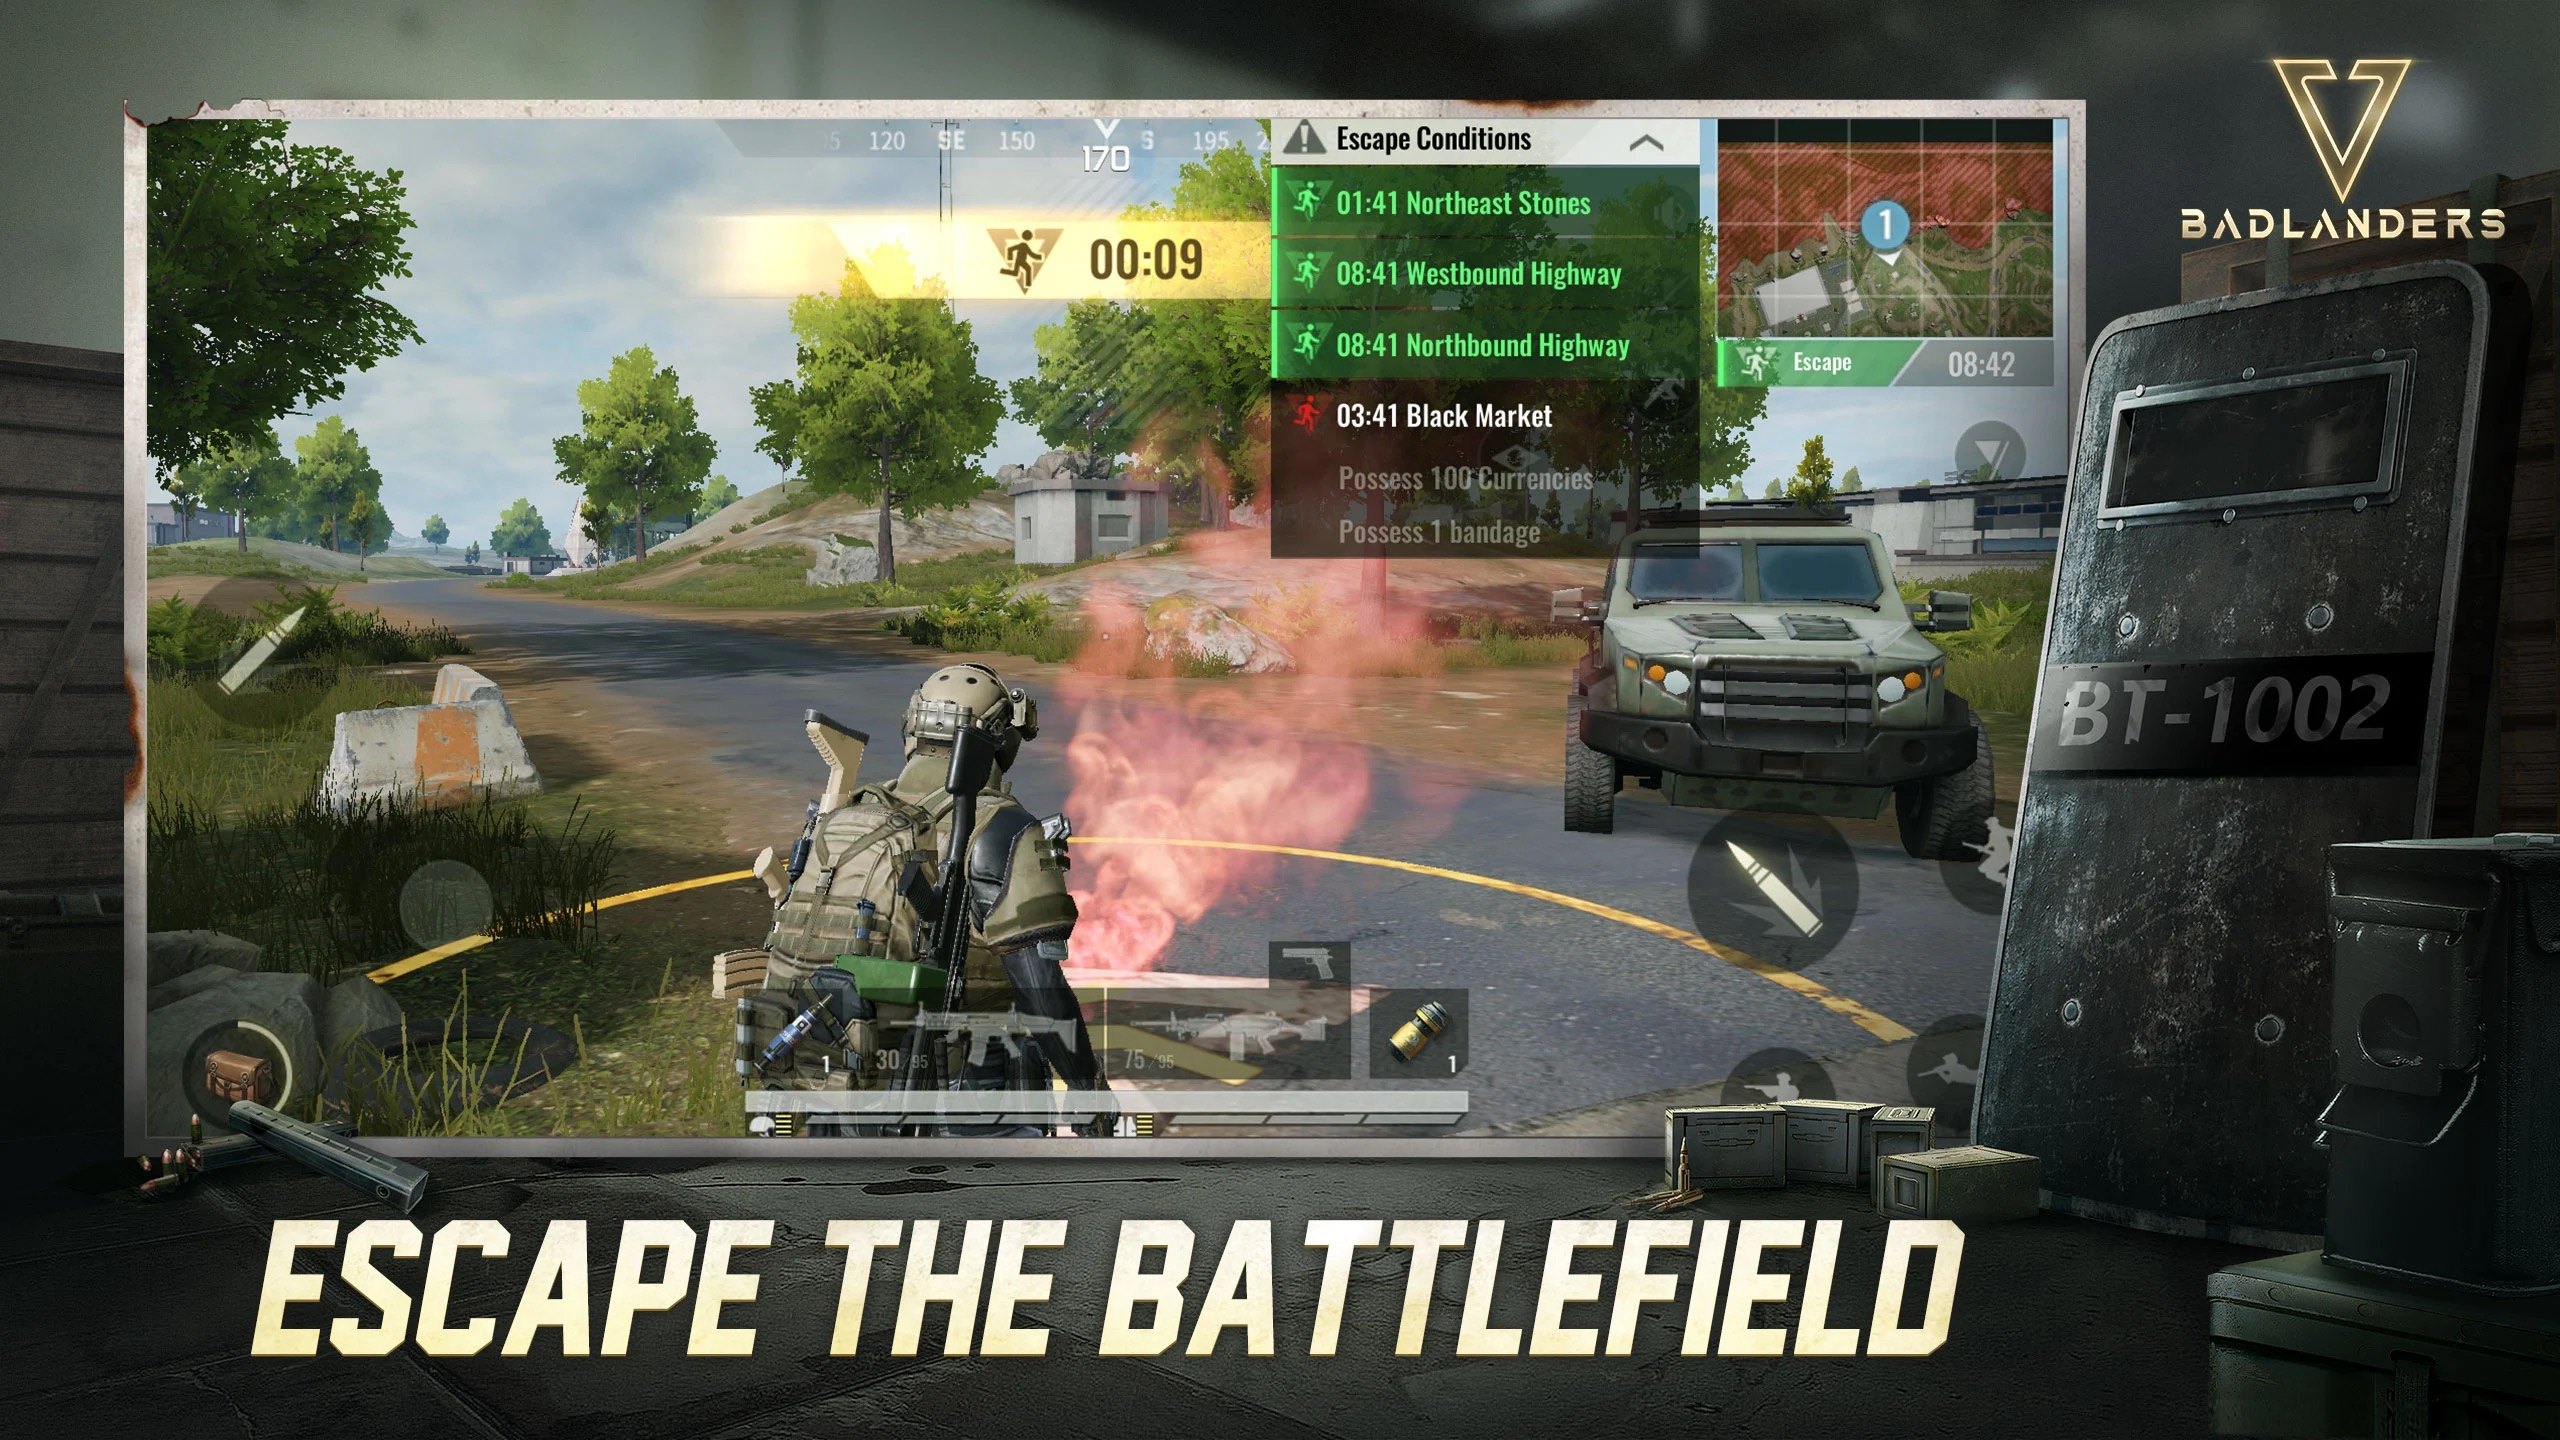 Viettel Media phát hành game bắn súng sinh tồn Badlanders tại Việt Nam